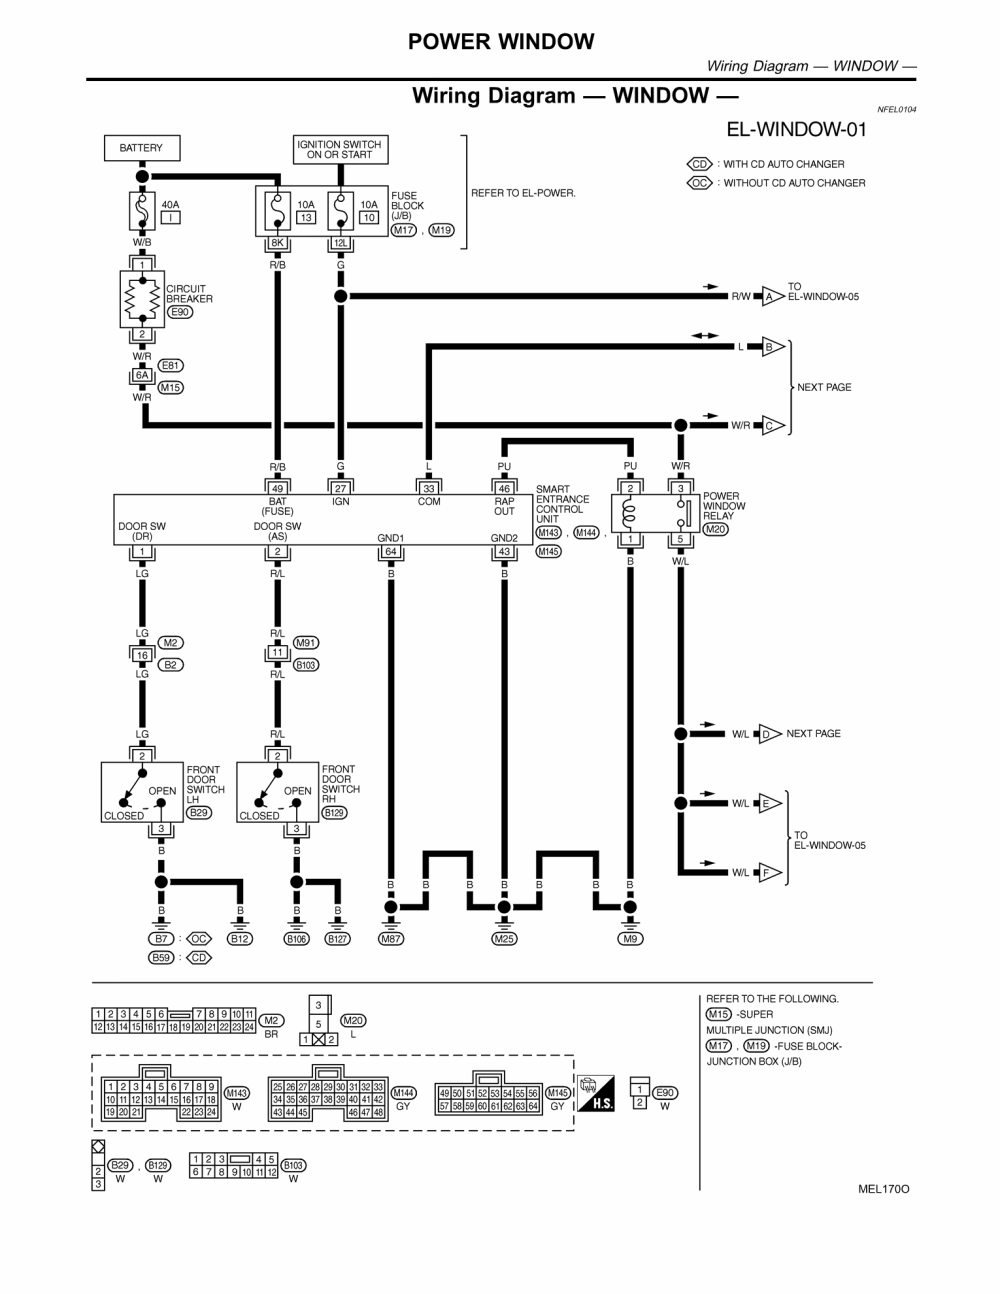 33 Power Window Switch Wiring Diagram